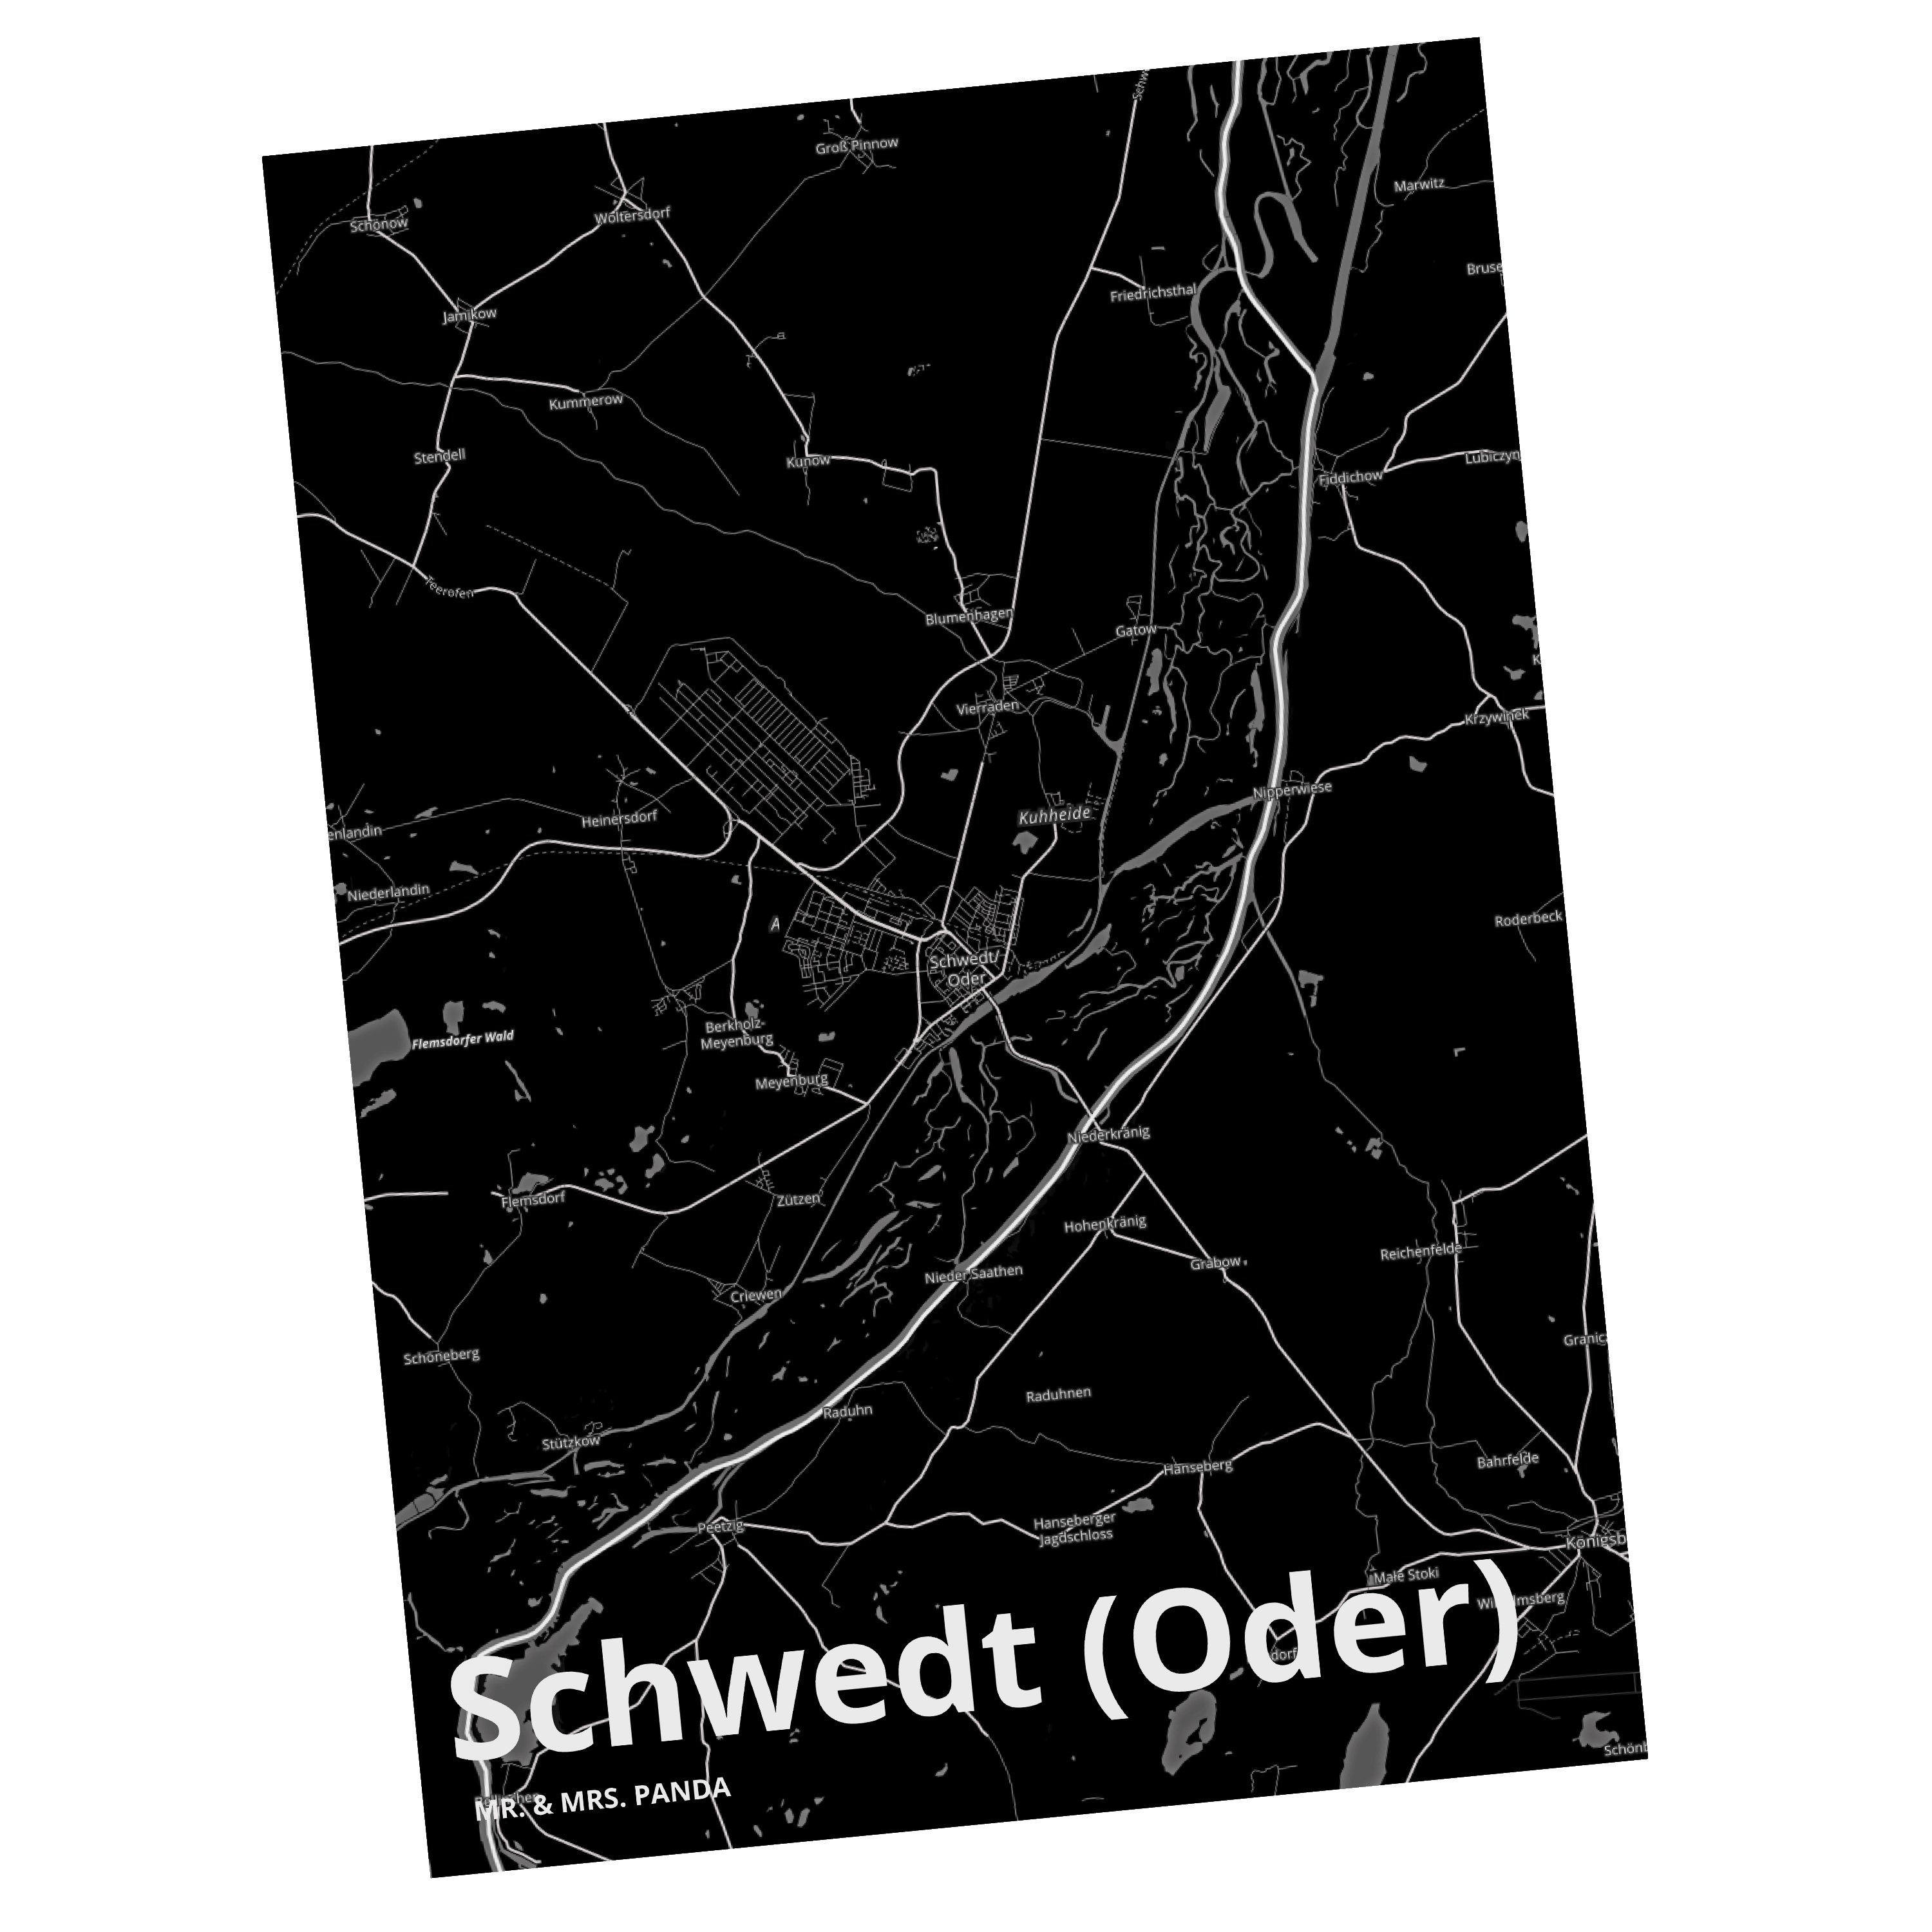 Mr. & Mrs. Panda Postkarte Schwedt (Oder) - Geschenk, Stadt Dorf Karte Landkarte Map Stadtplan